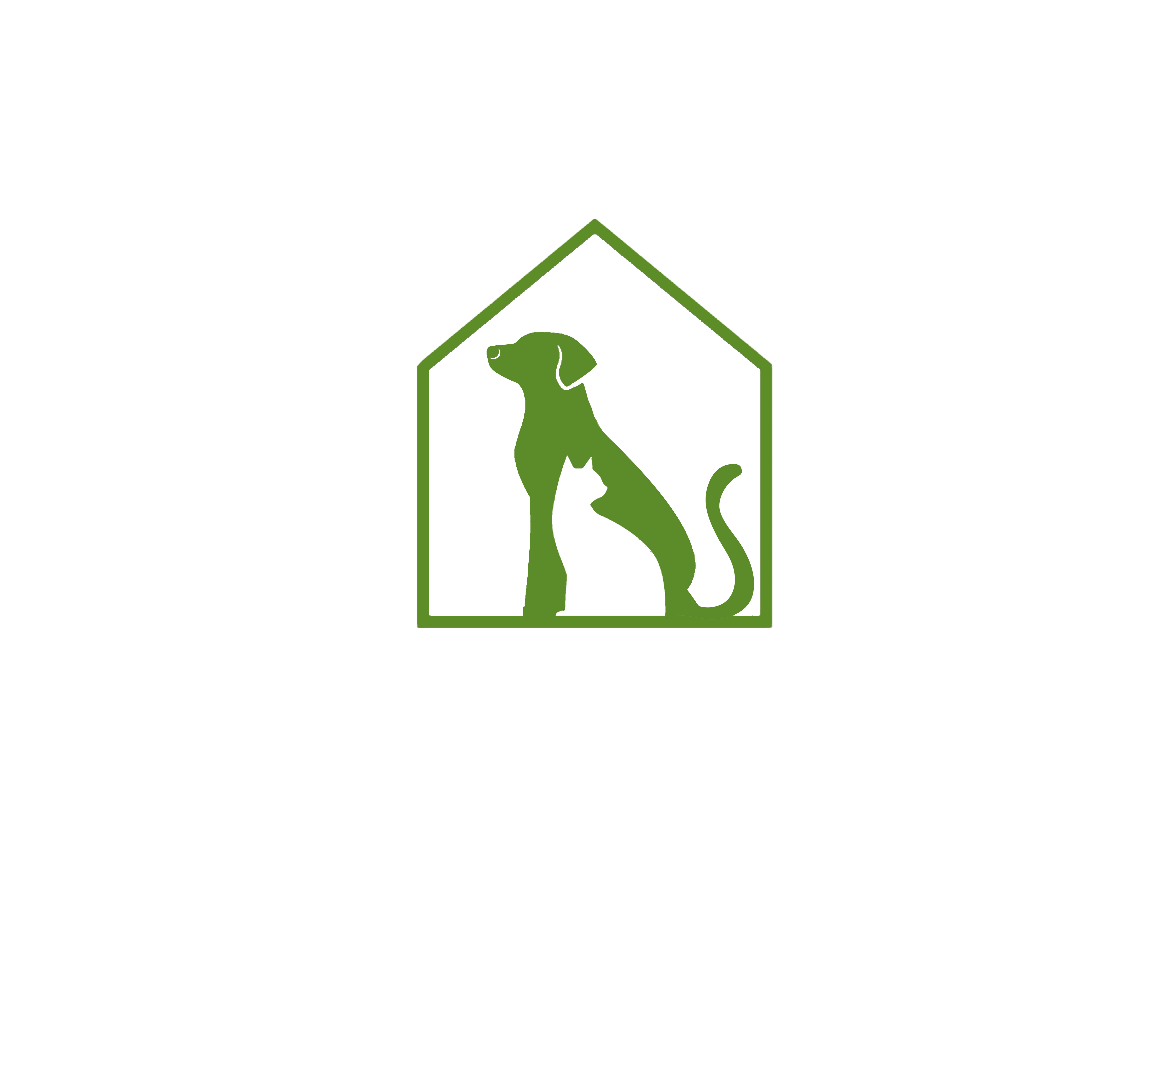 Dallas Bark + Build